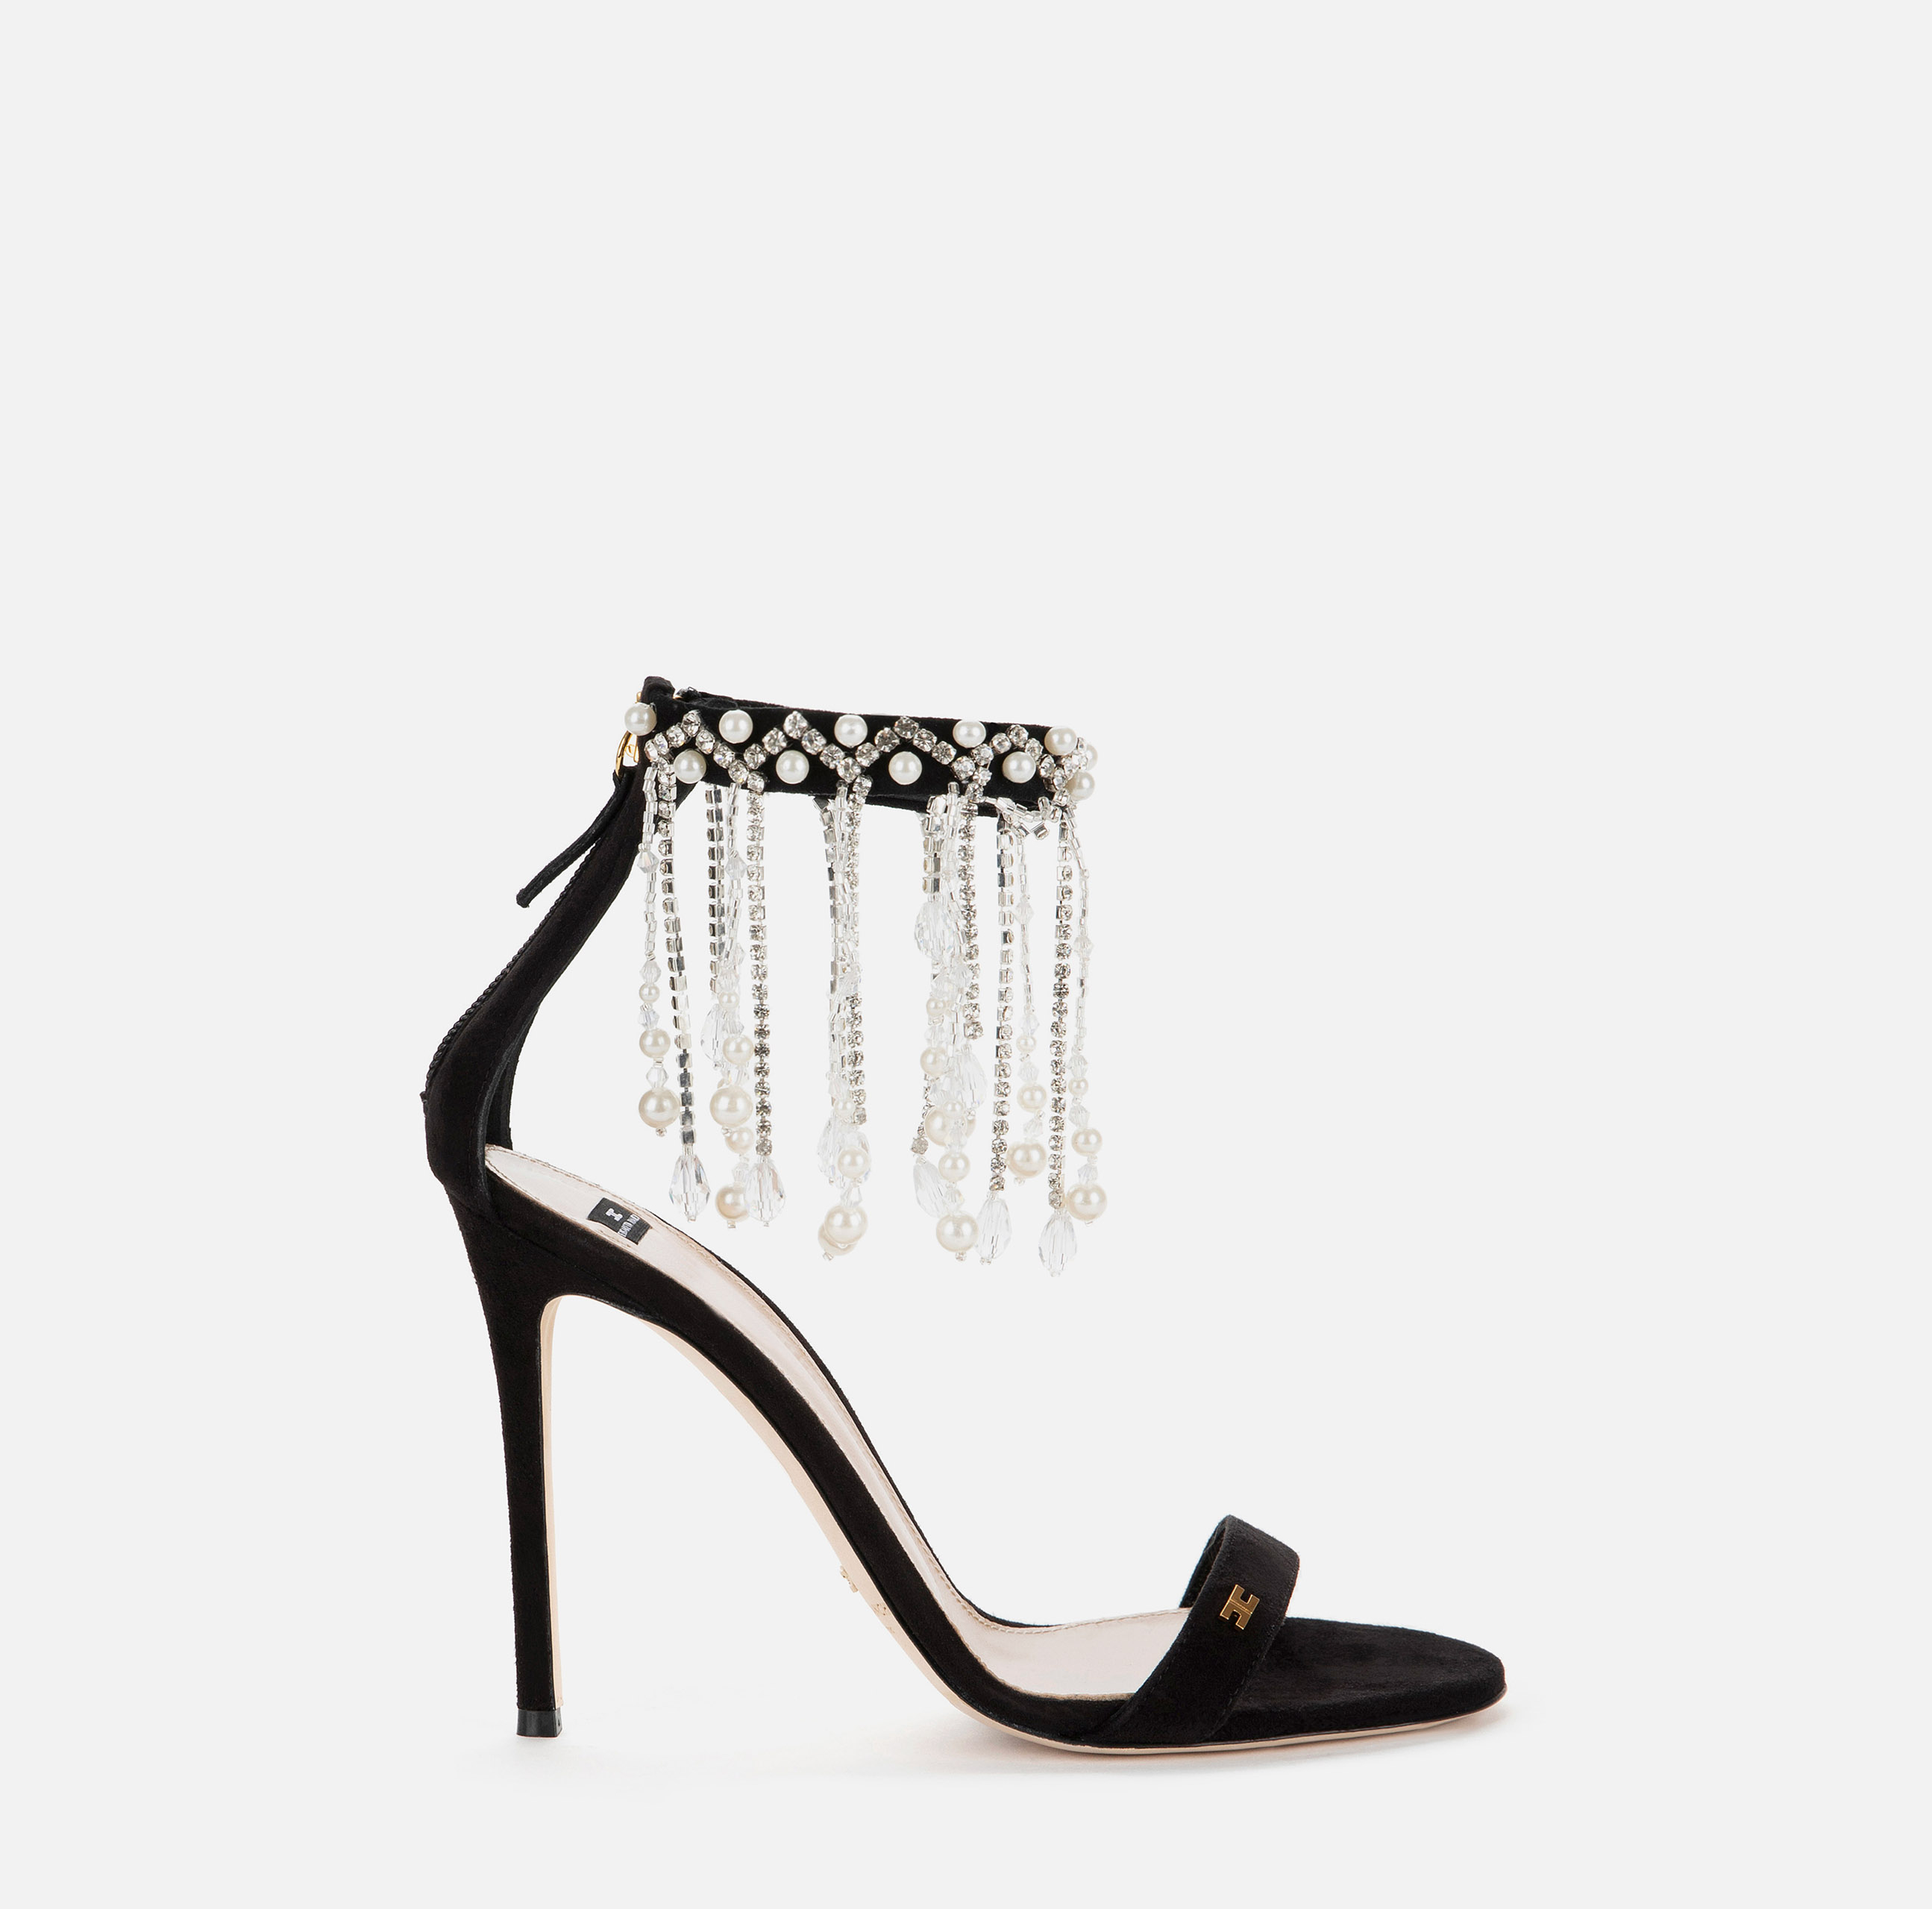 Sandale mit Kette, besetzt mit Strass und Perlen - SCARPE - Elisabetta Franchi